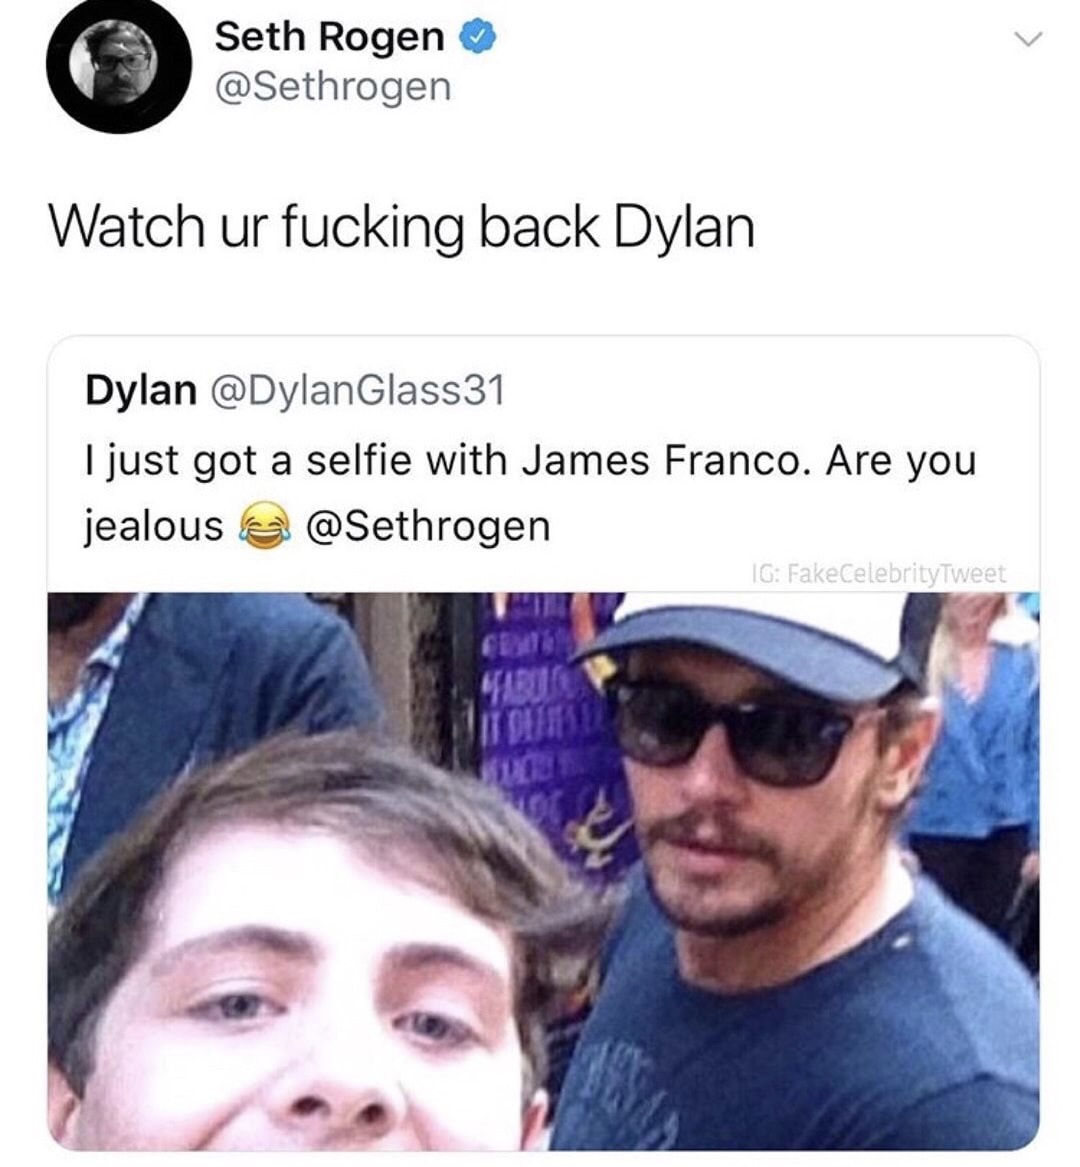 seth rogen memes - Seth Rogen Watch ur fucking back Dylan Dylan I just got a selfie with James Franco. Are you jealous & Ig FakeCelebrityTweet Itglie